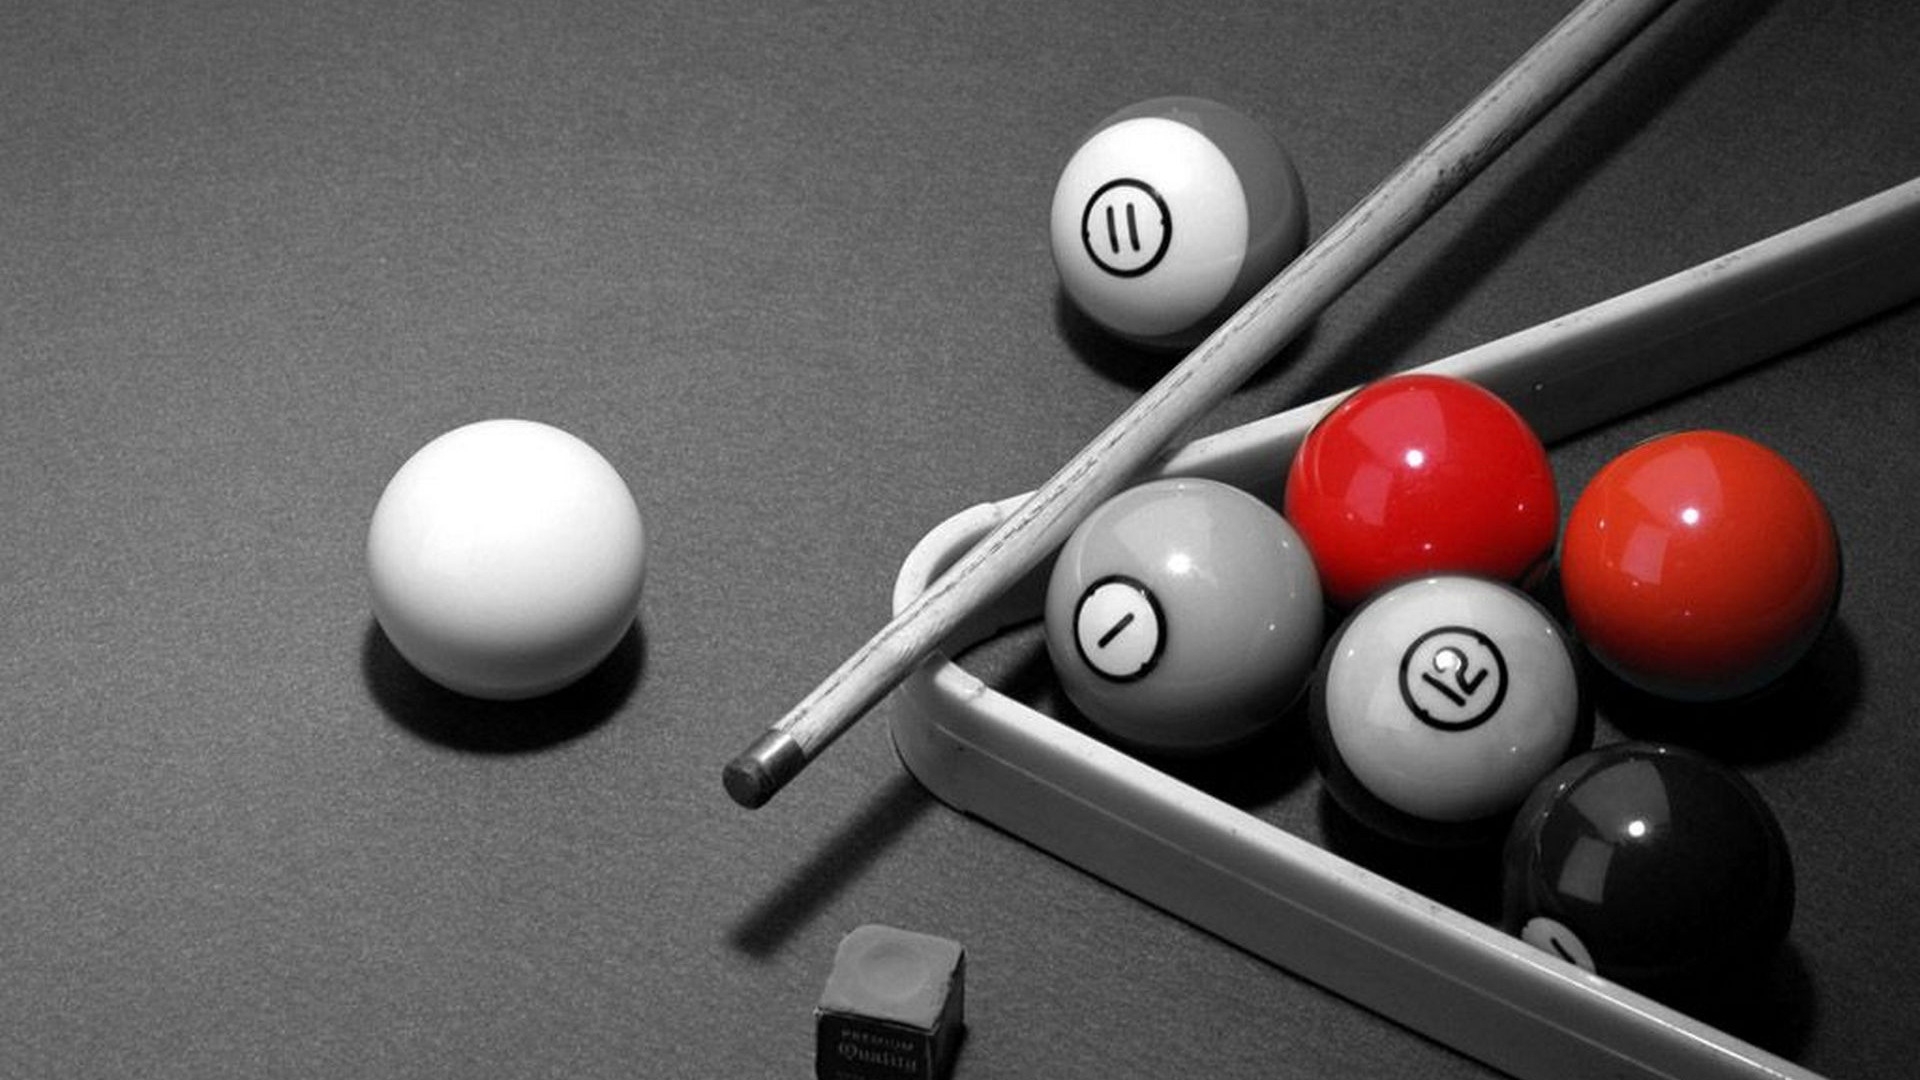 billiards black and white wallpaper